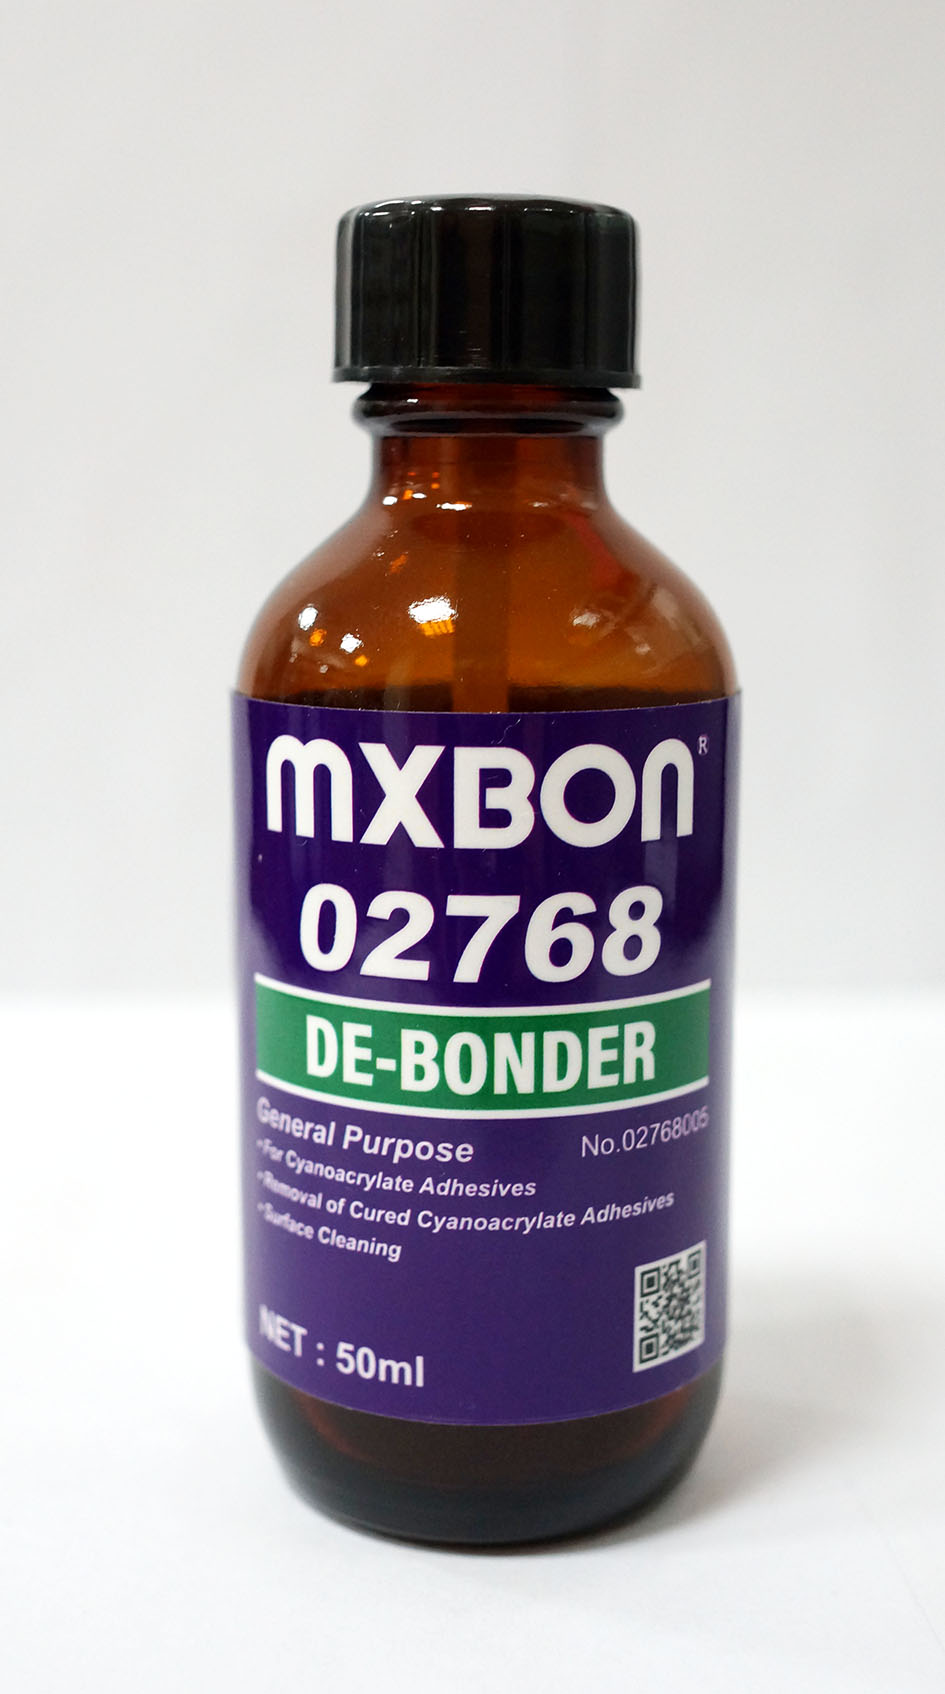 MXBON DE-BONDER